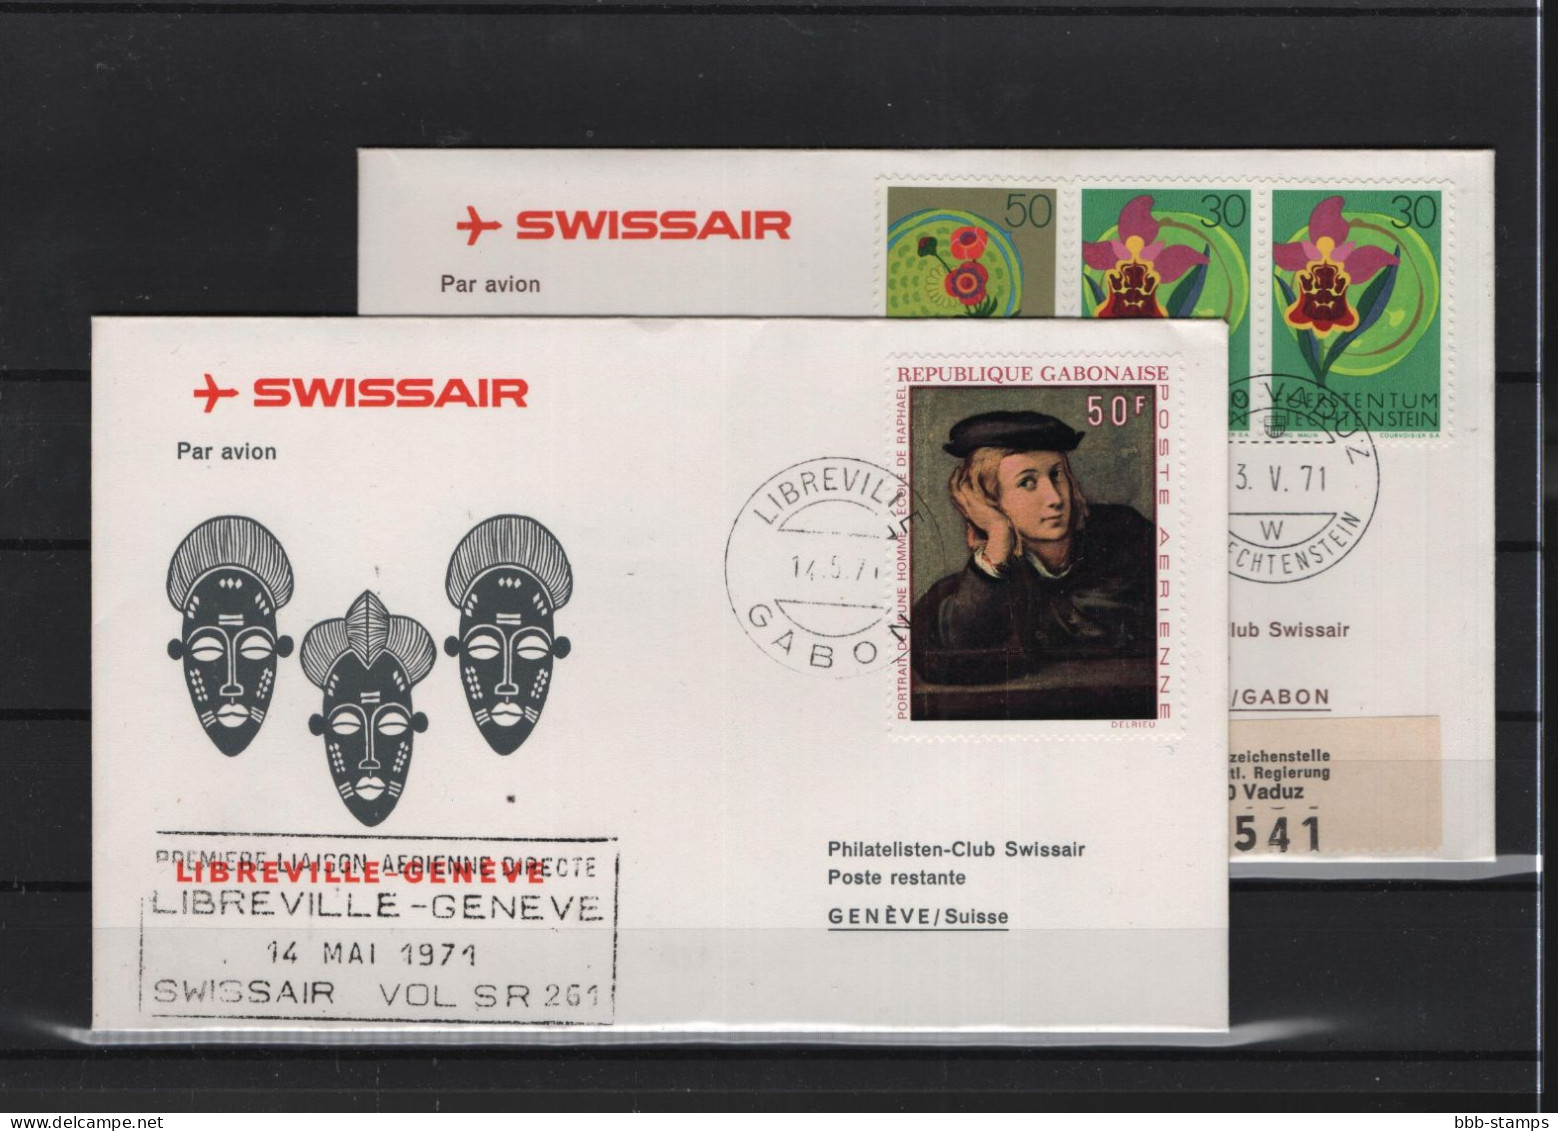 Schweiz Luftpost FFC Swissair 15.5.1971 Genf  Libreville VV - Premiers Vols